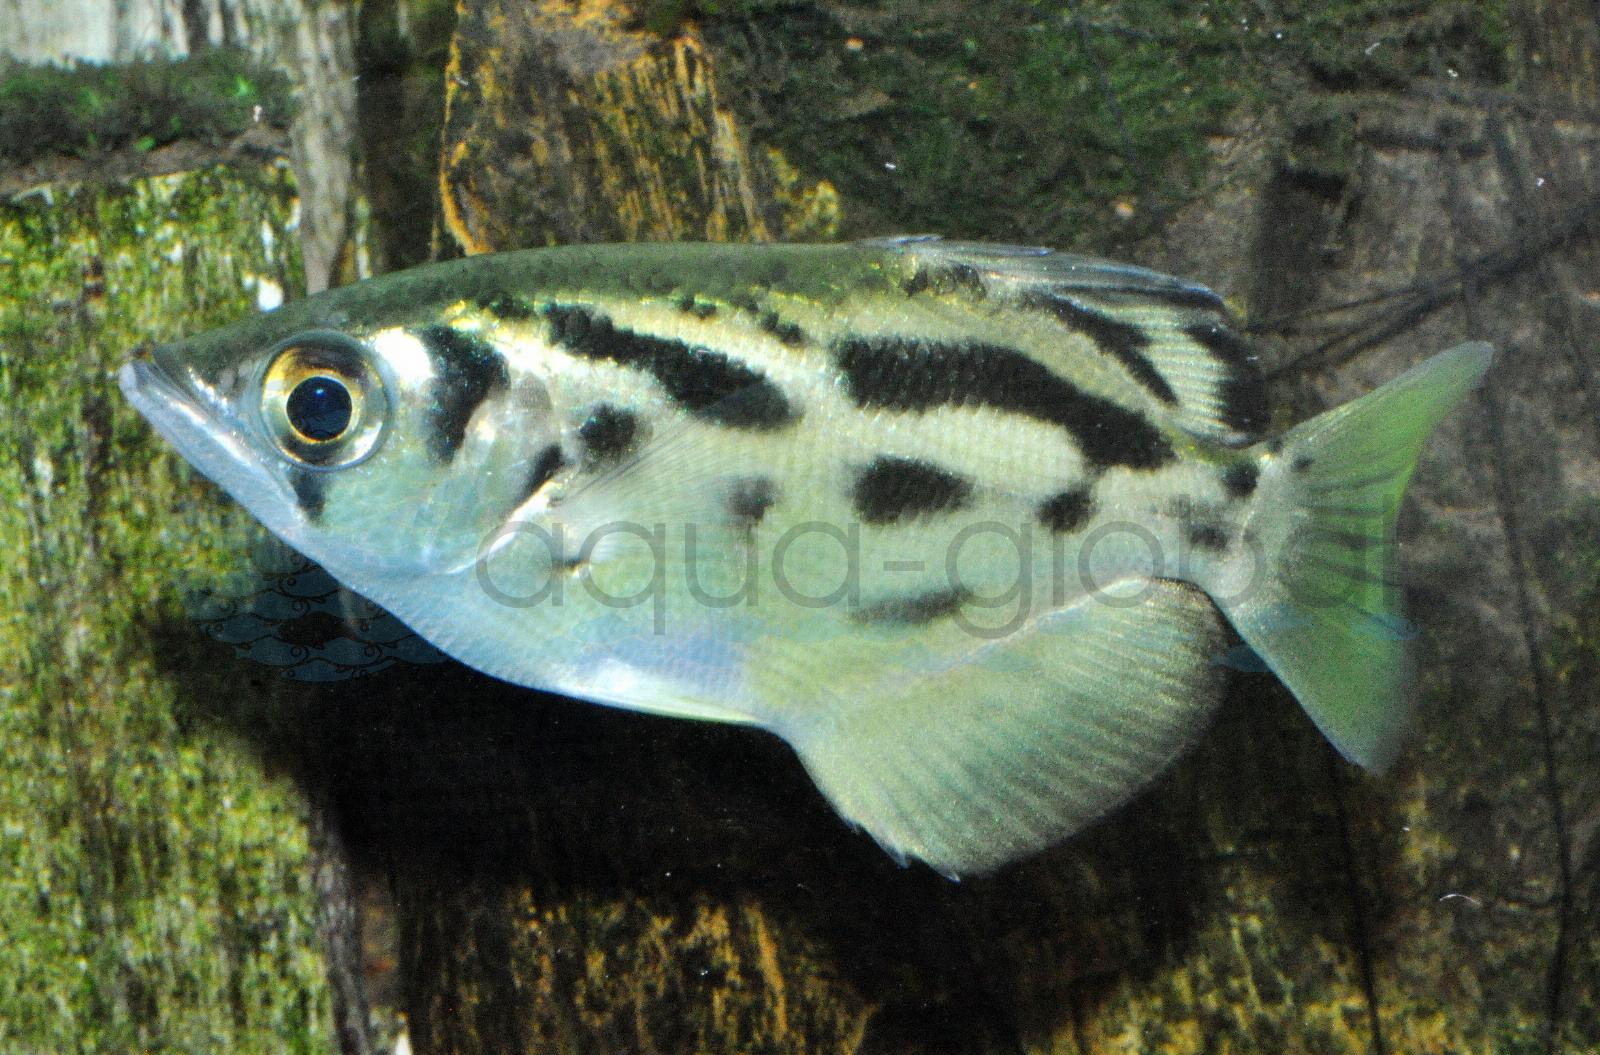 Leopard-Schützenfisch (Toxotes blythii)